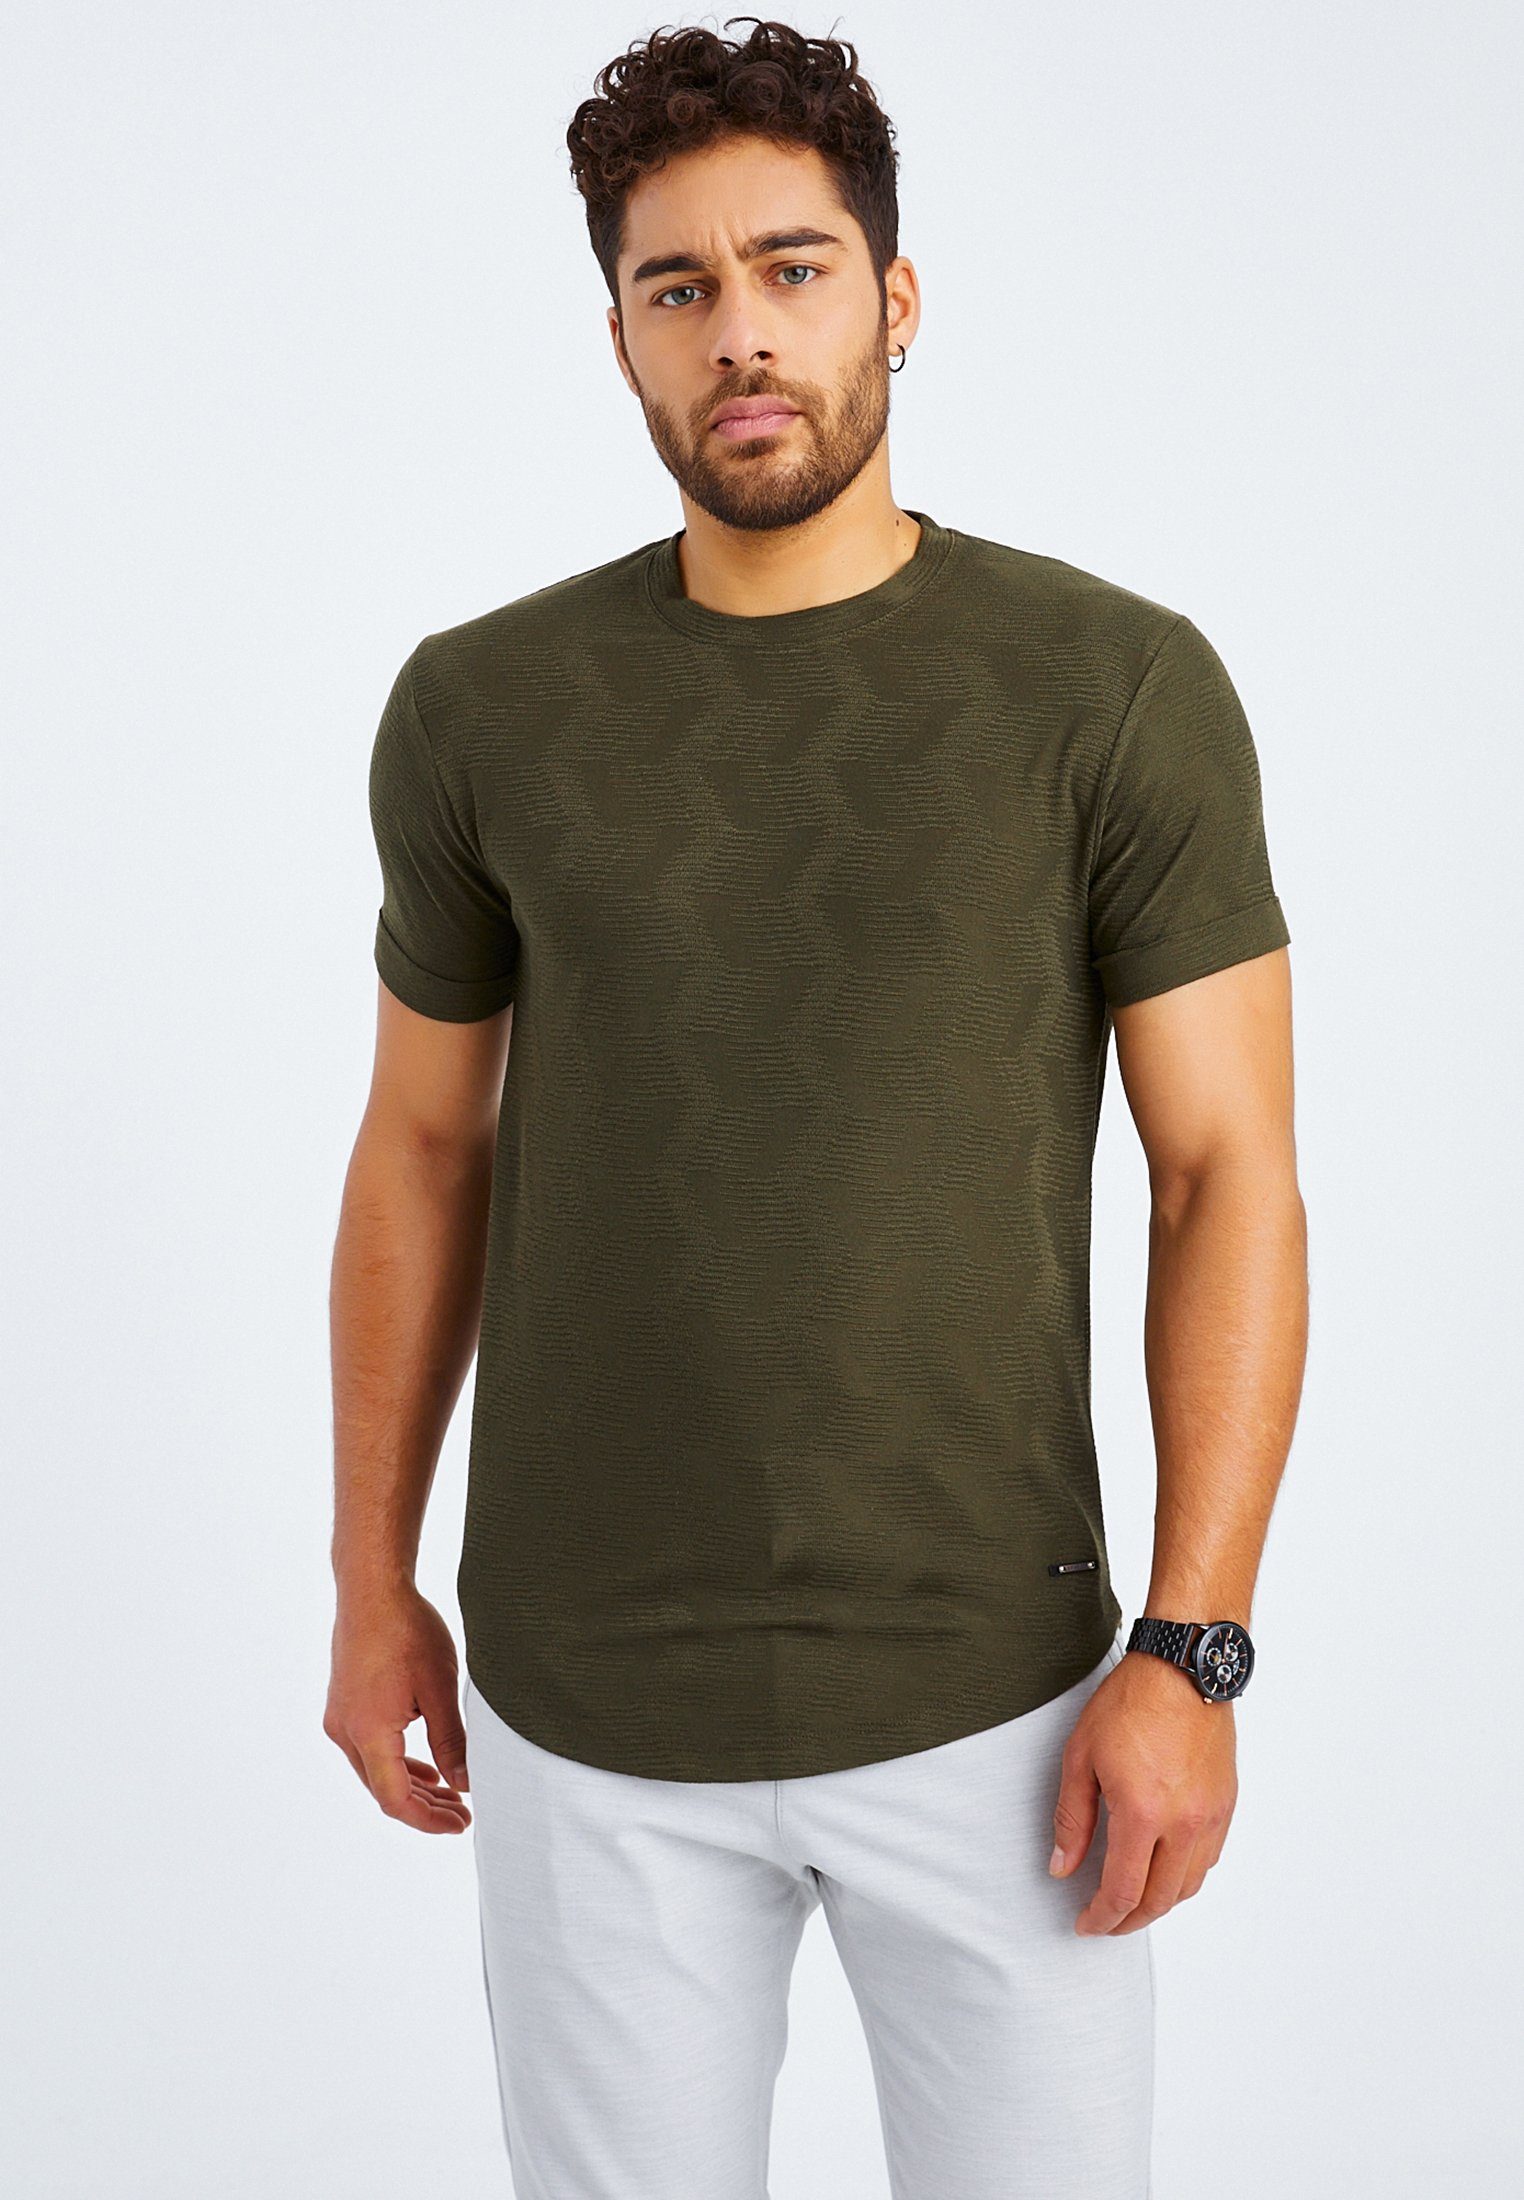 Leif Nelson T-Shirt Herren T-Shirt normal khaki Rundhals LN-55585